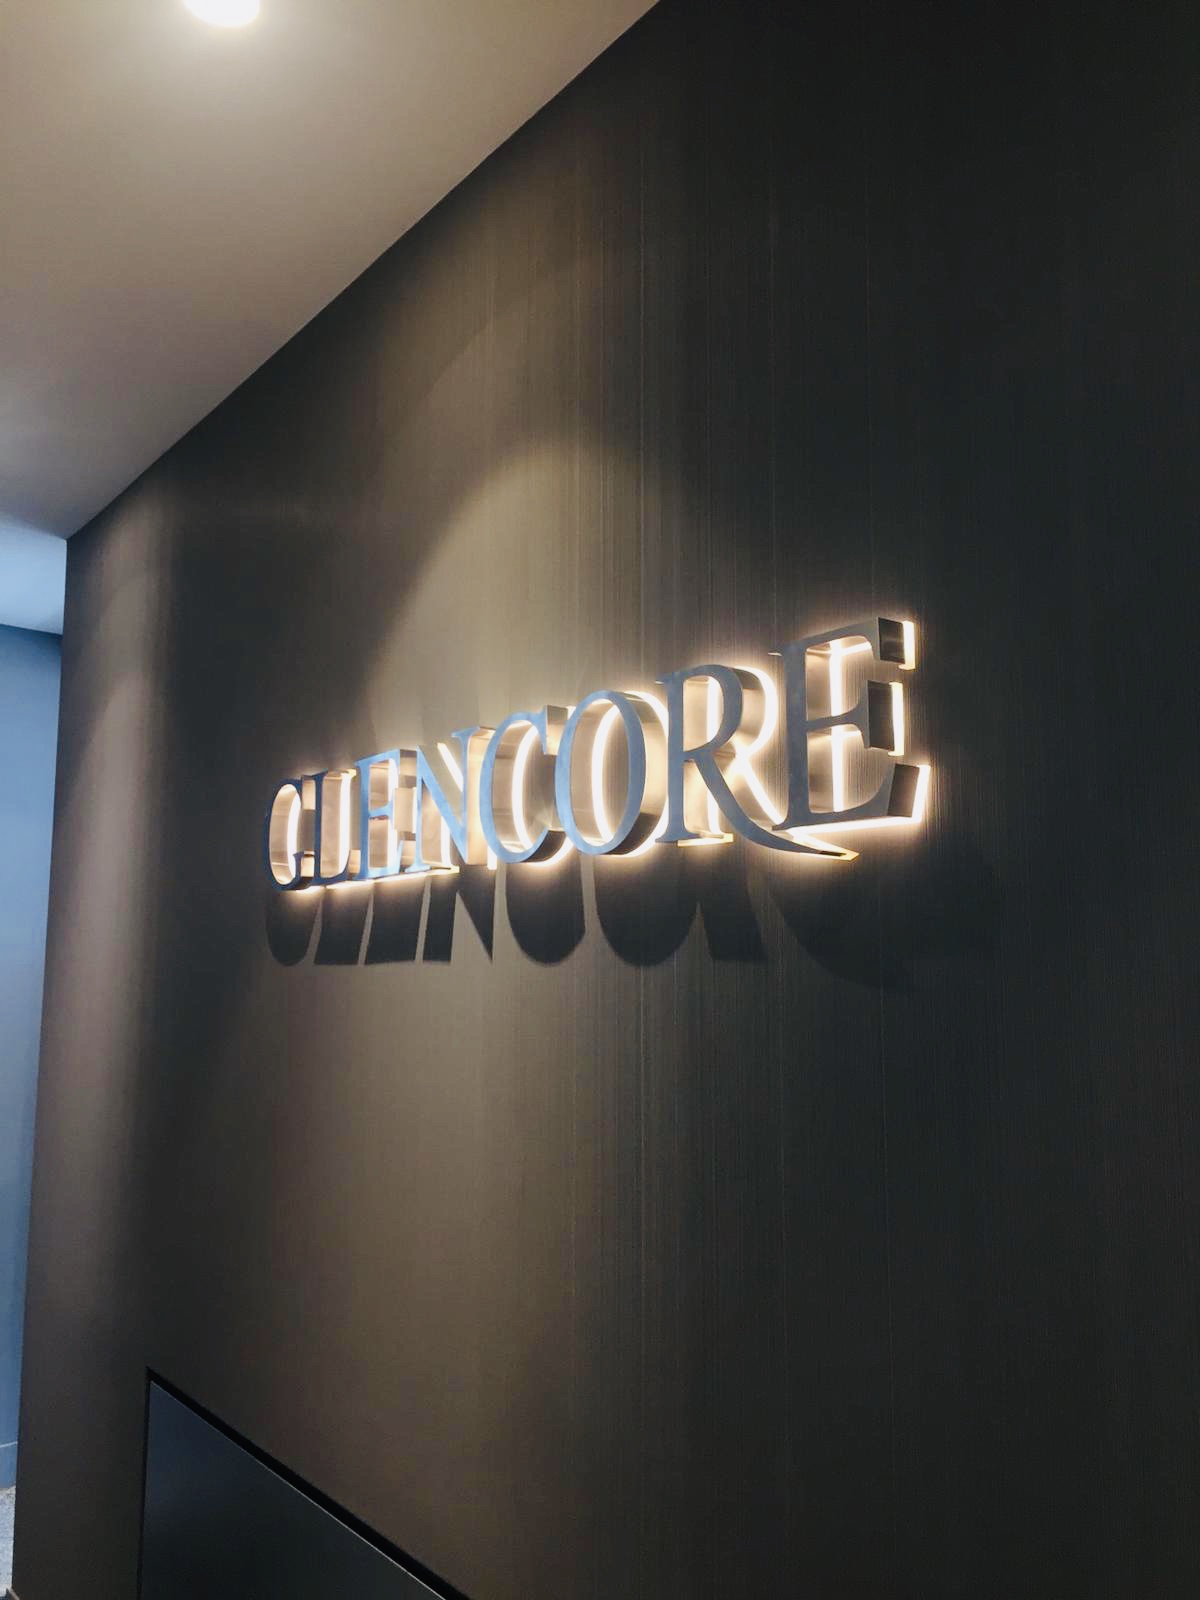 Glencore giriş tabelası